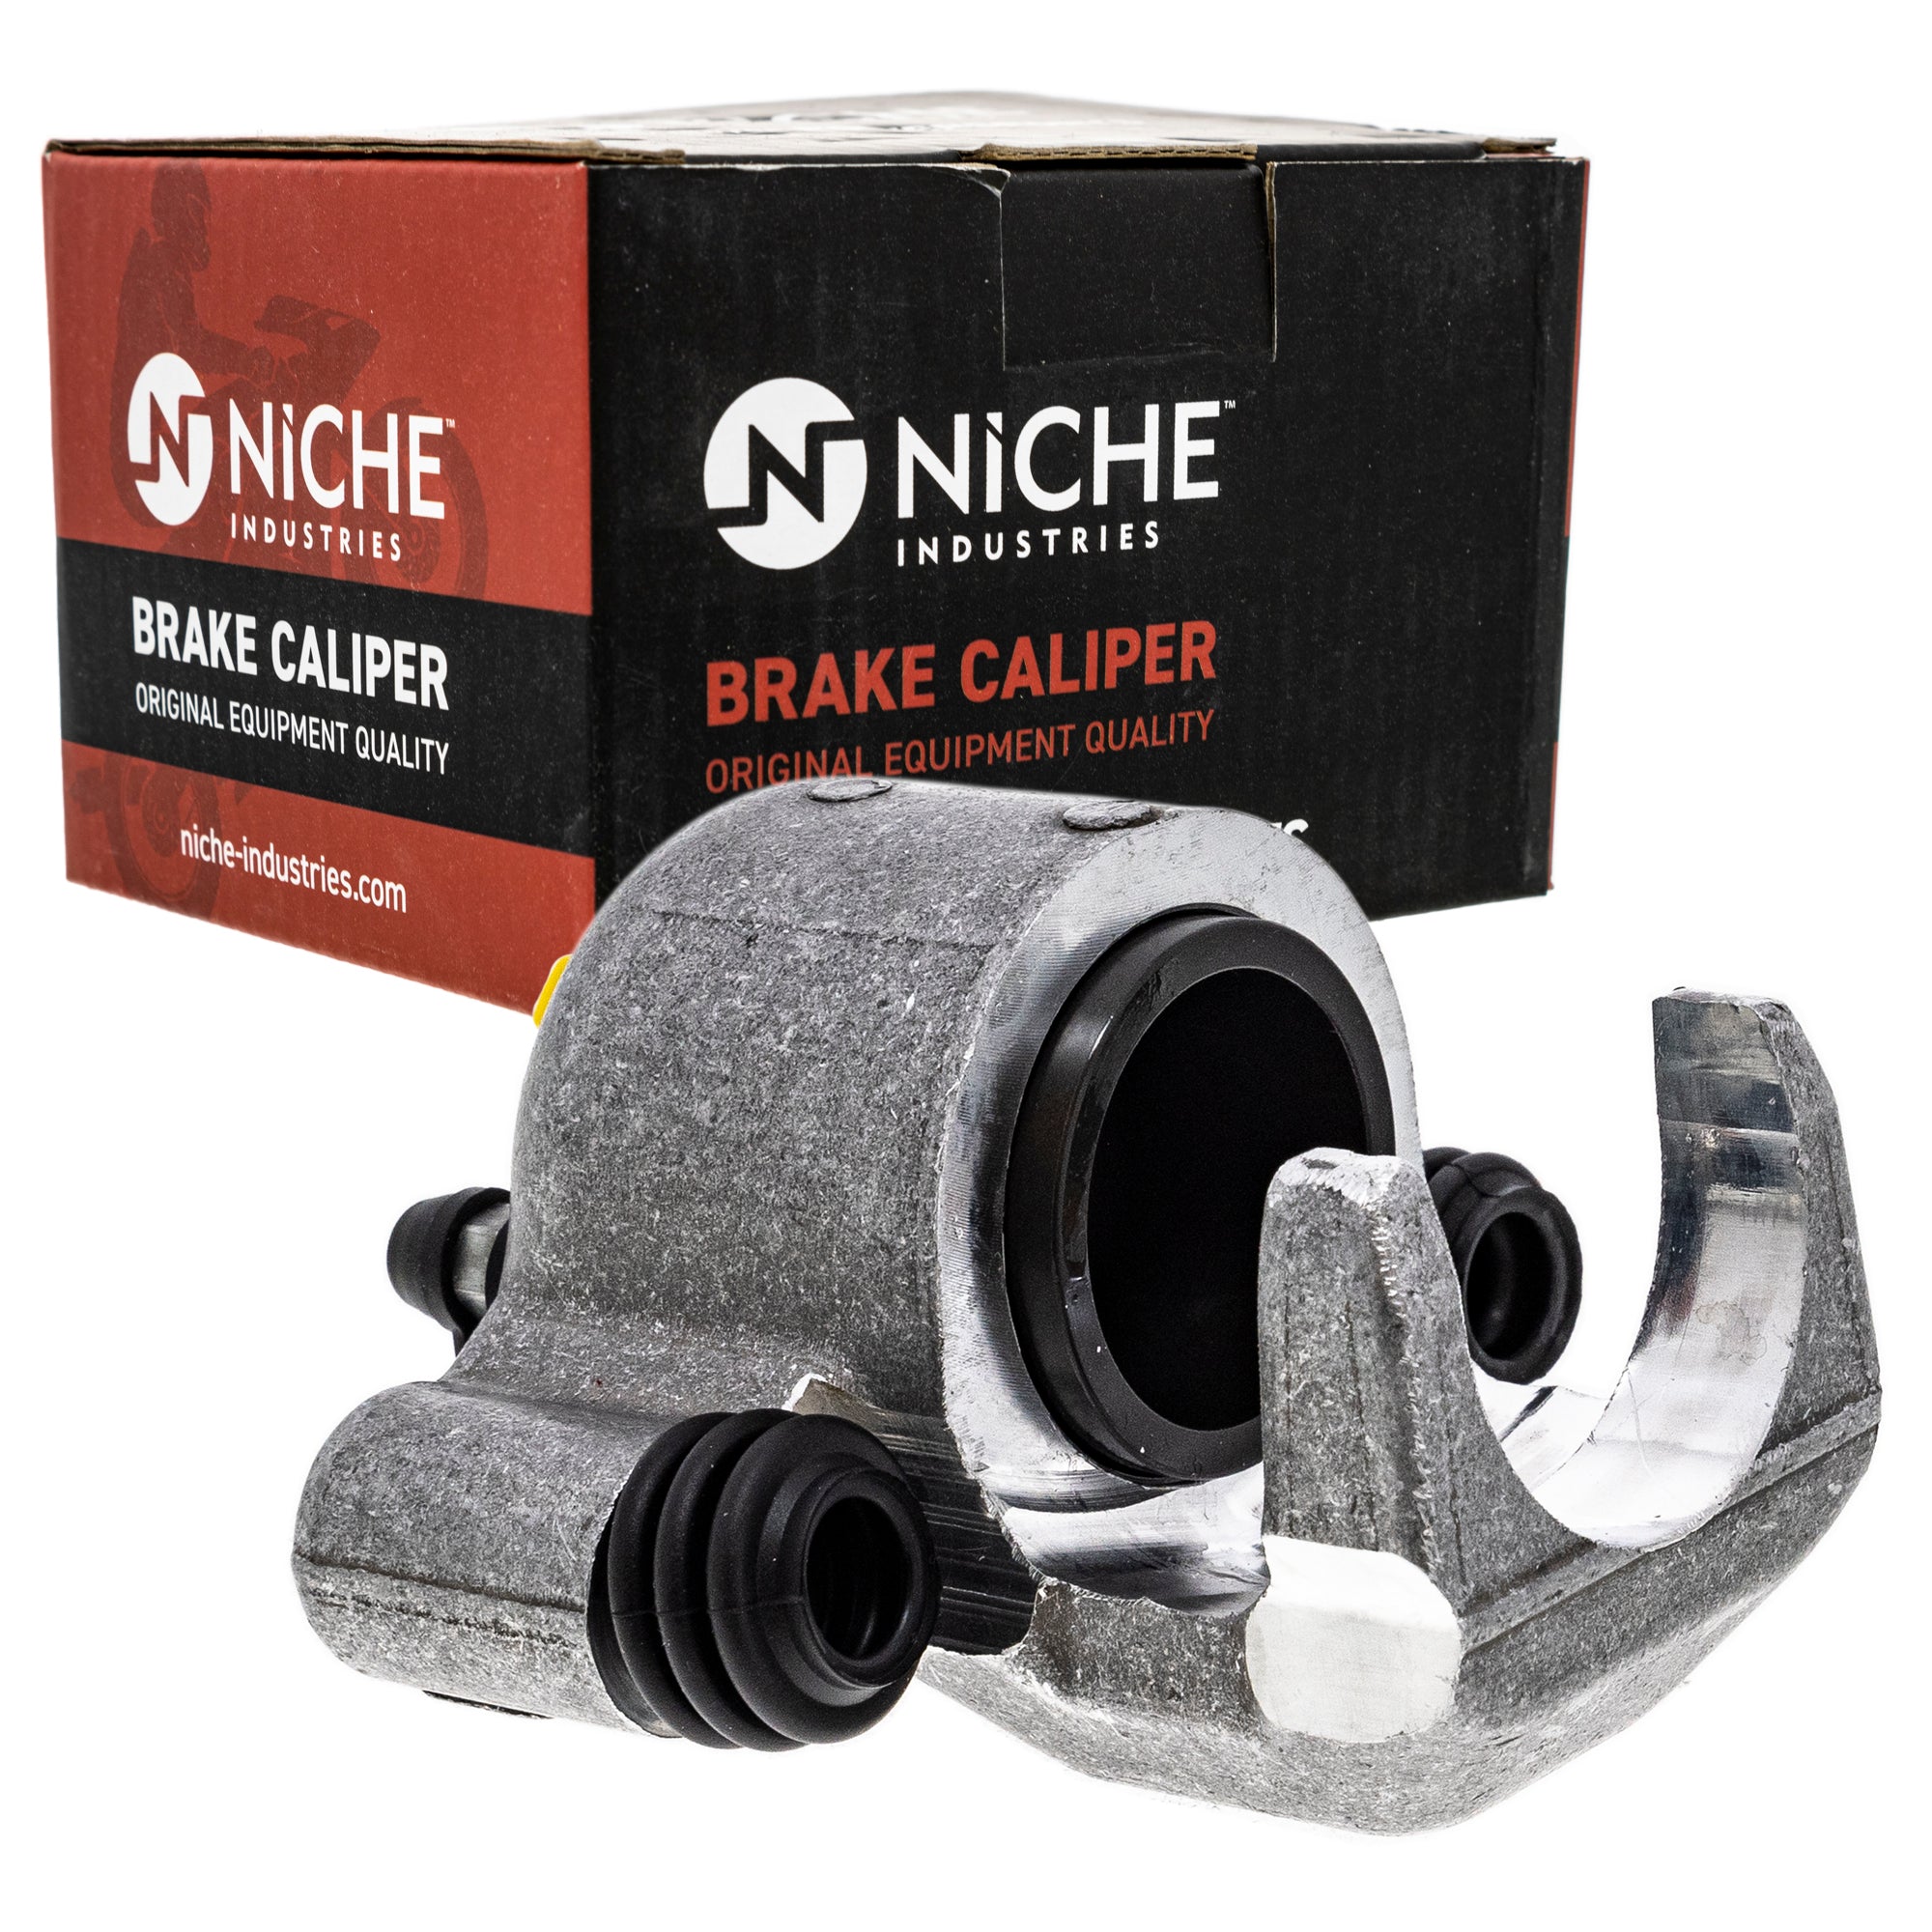 NICHE MK1001239 Brake Caliper Kit